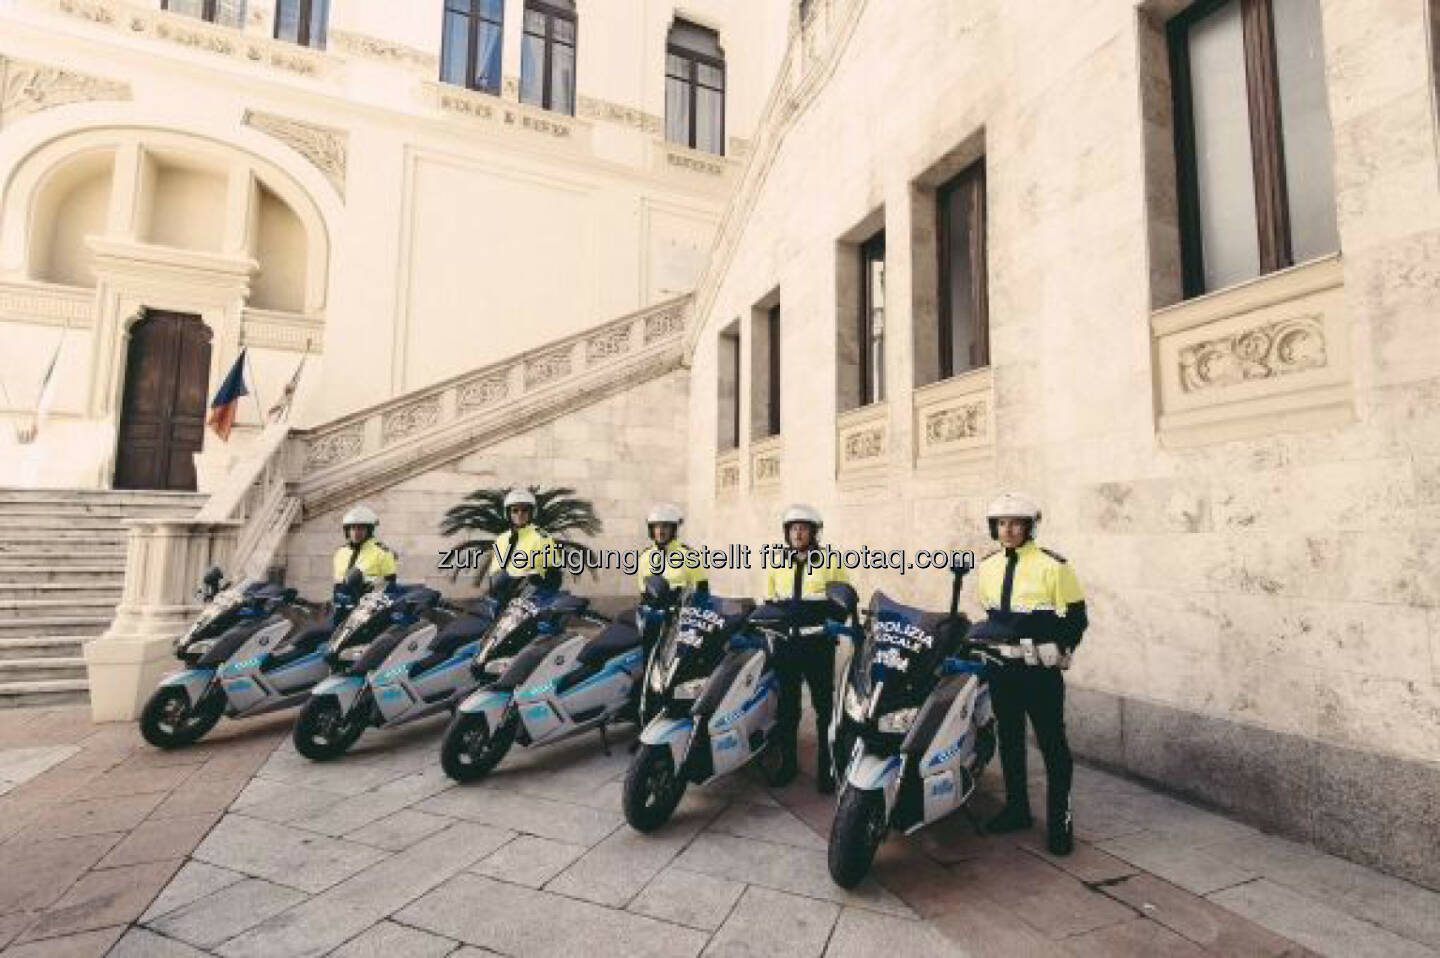 BMW Motorrad stattet Polizei in Sardiniens Hauptstadt mit 15 BMW C evolution aus. Emissionsfreie und effiziente Polizeieinsätze nach Barcelona nun auch in Cagliari.